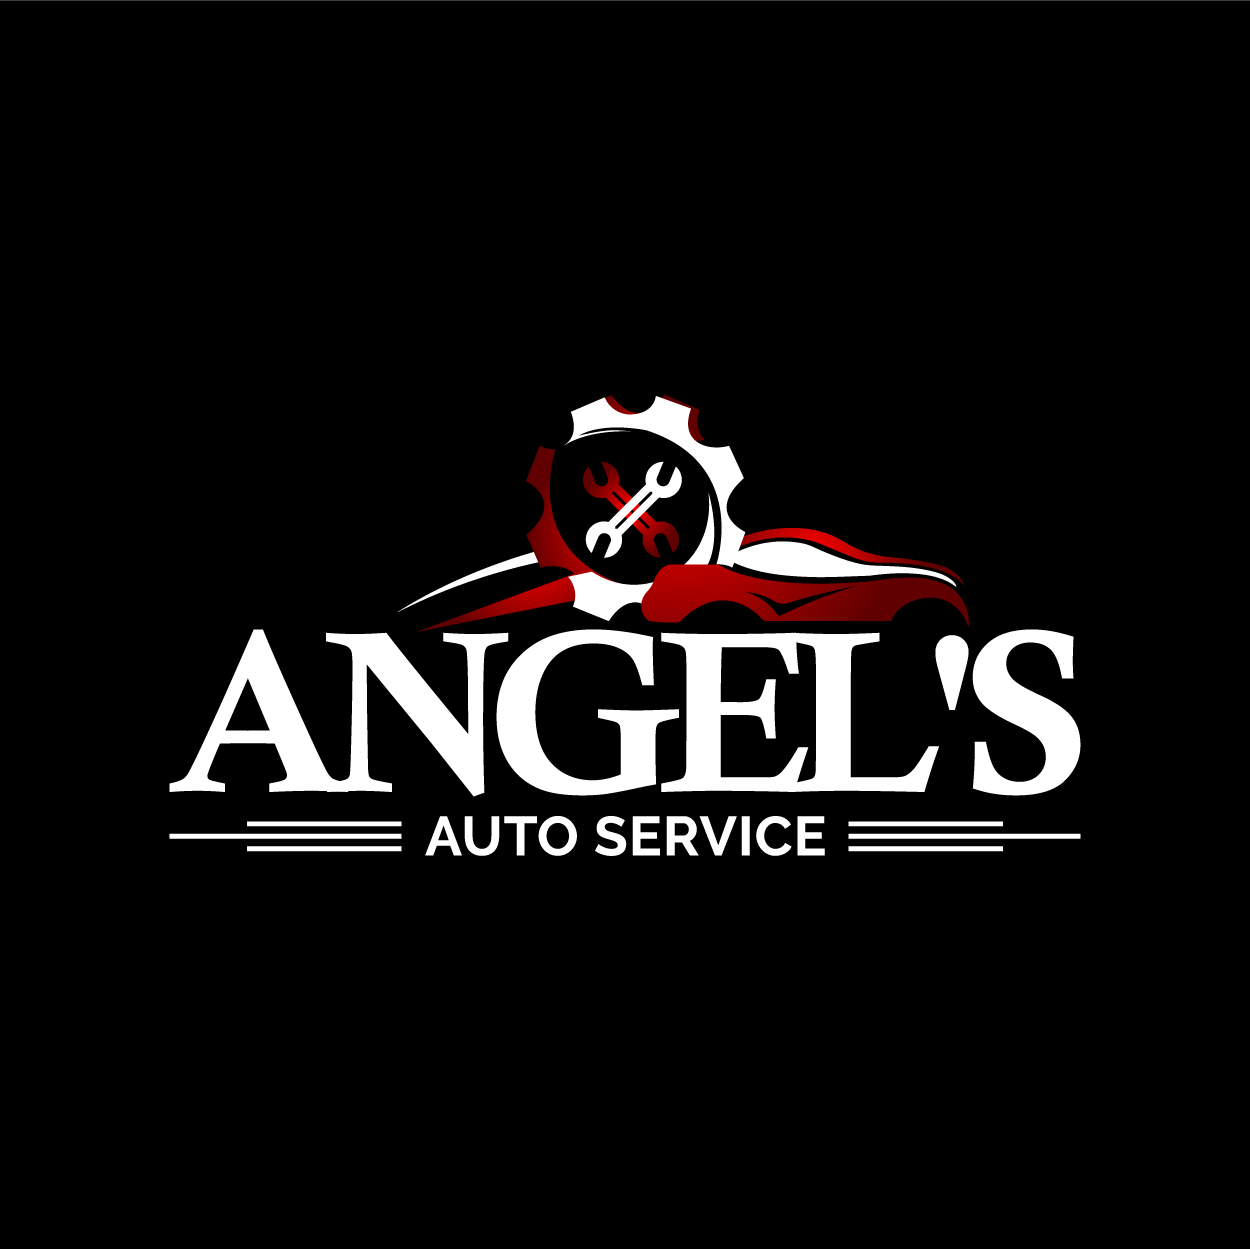 Angel's Auto Service - Denver Logo